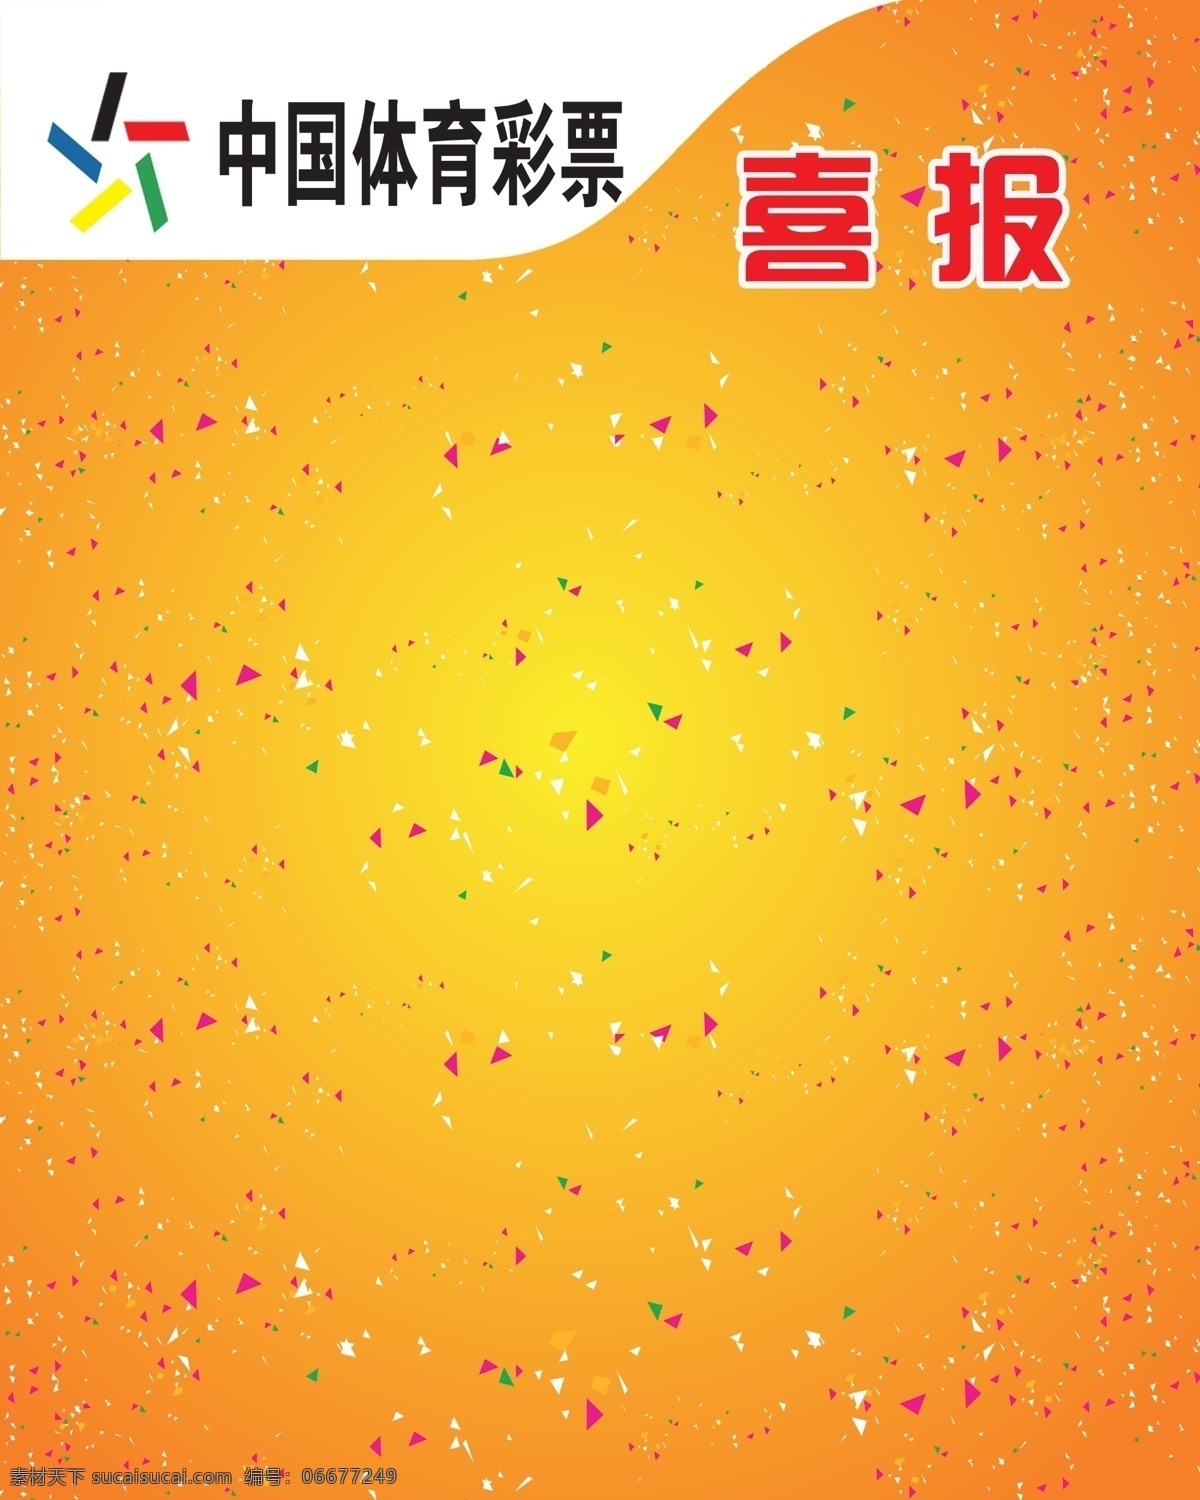 中国 体育彩票 喜报 宣传栏 体育 彩票 室内广告设计